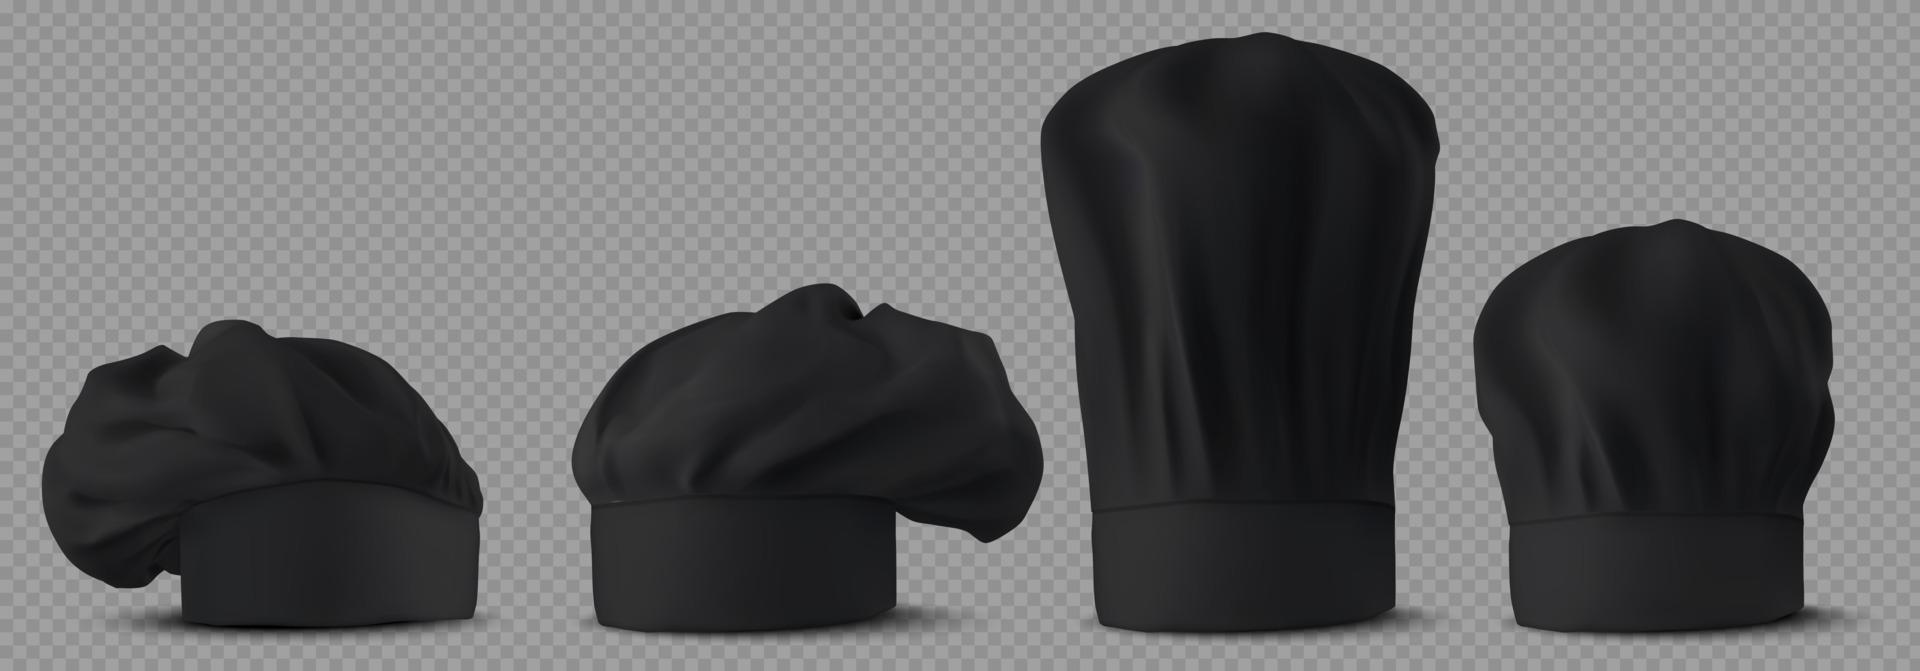 chapéus de chef preto, uniforme de fogão na cozinha do café vetor